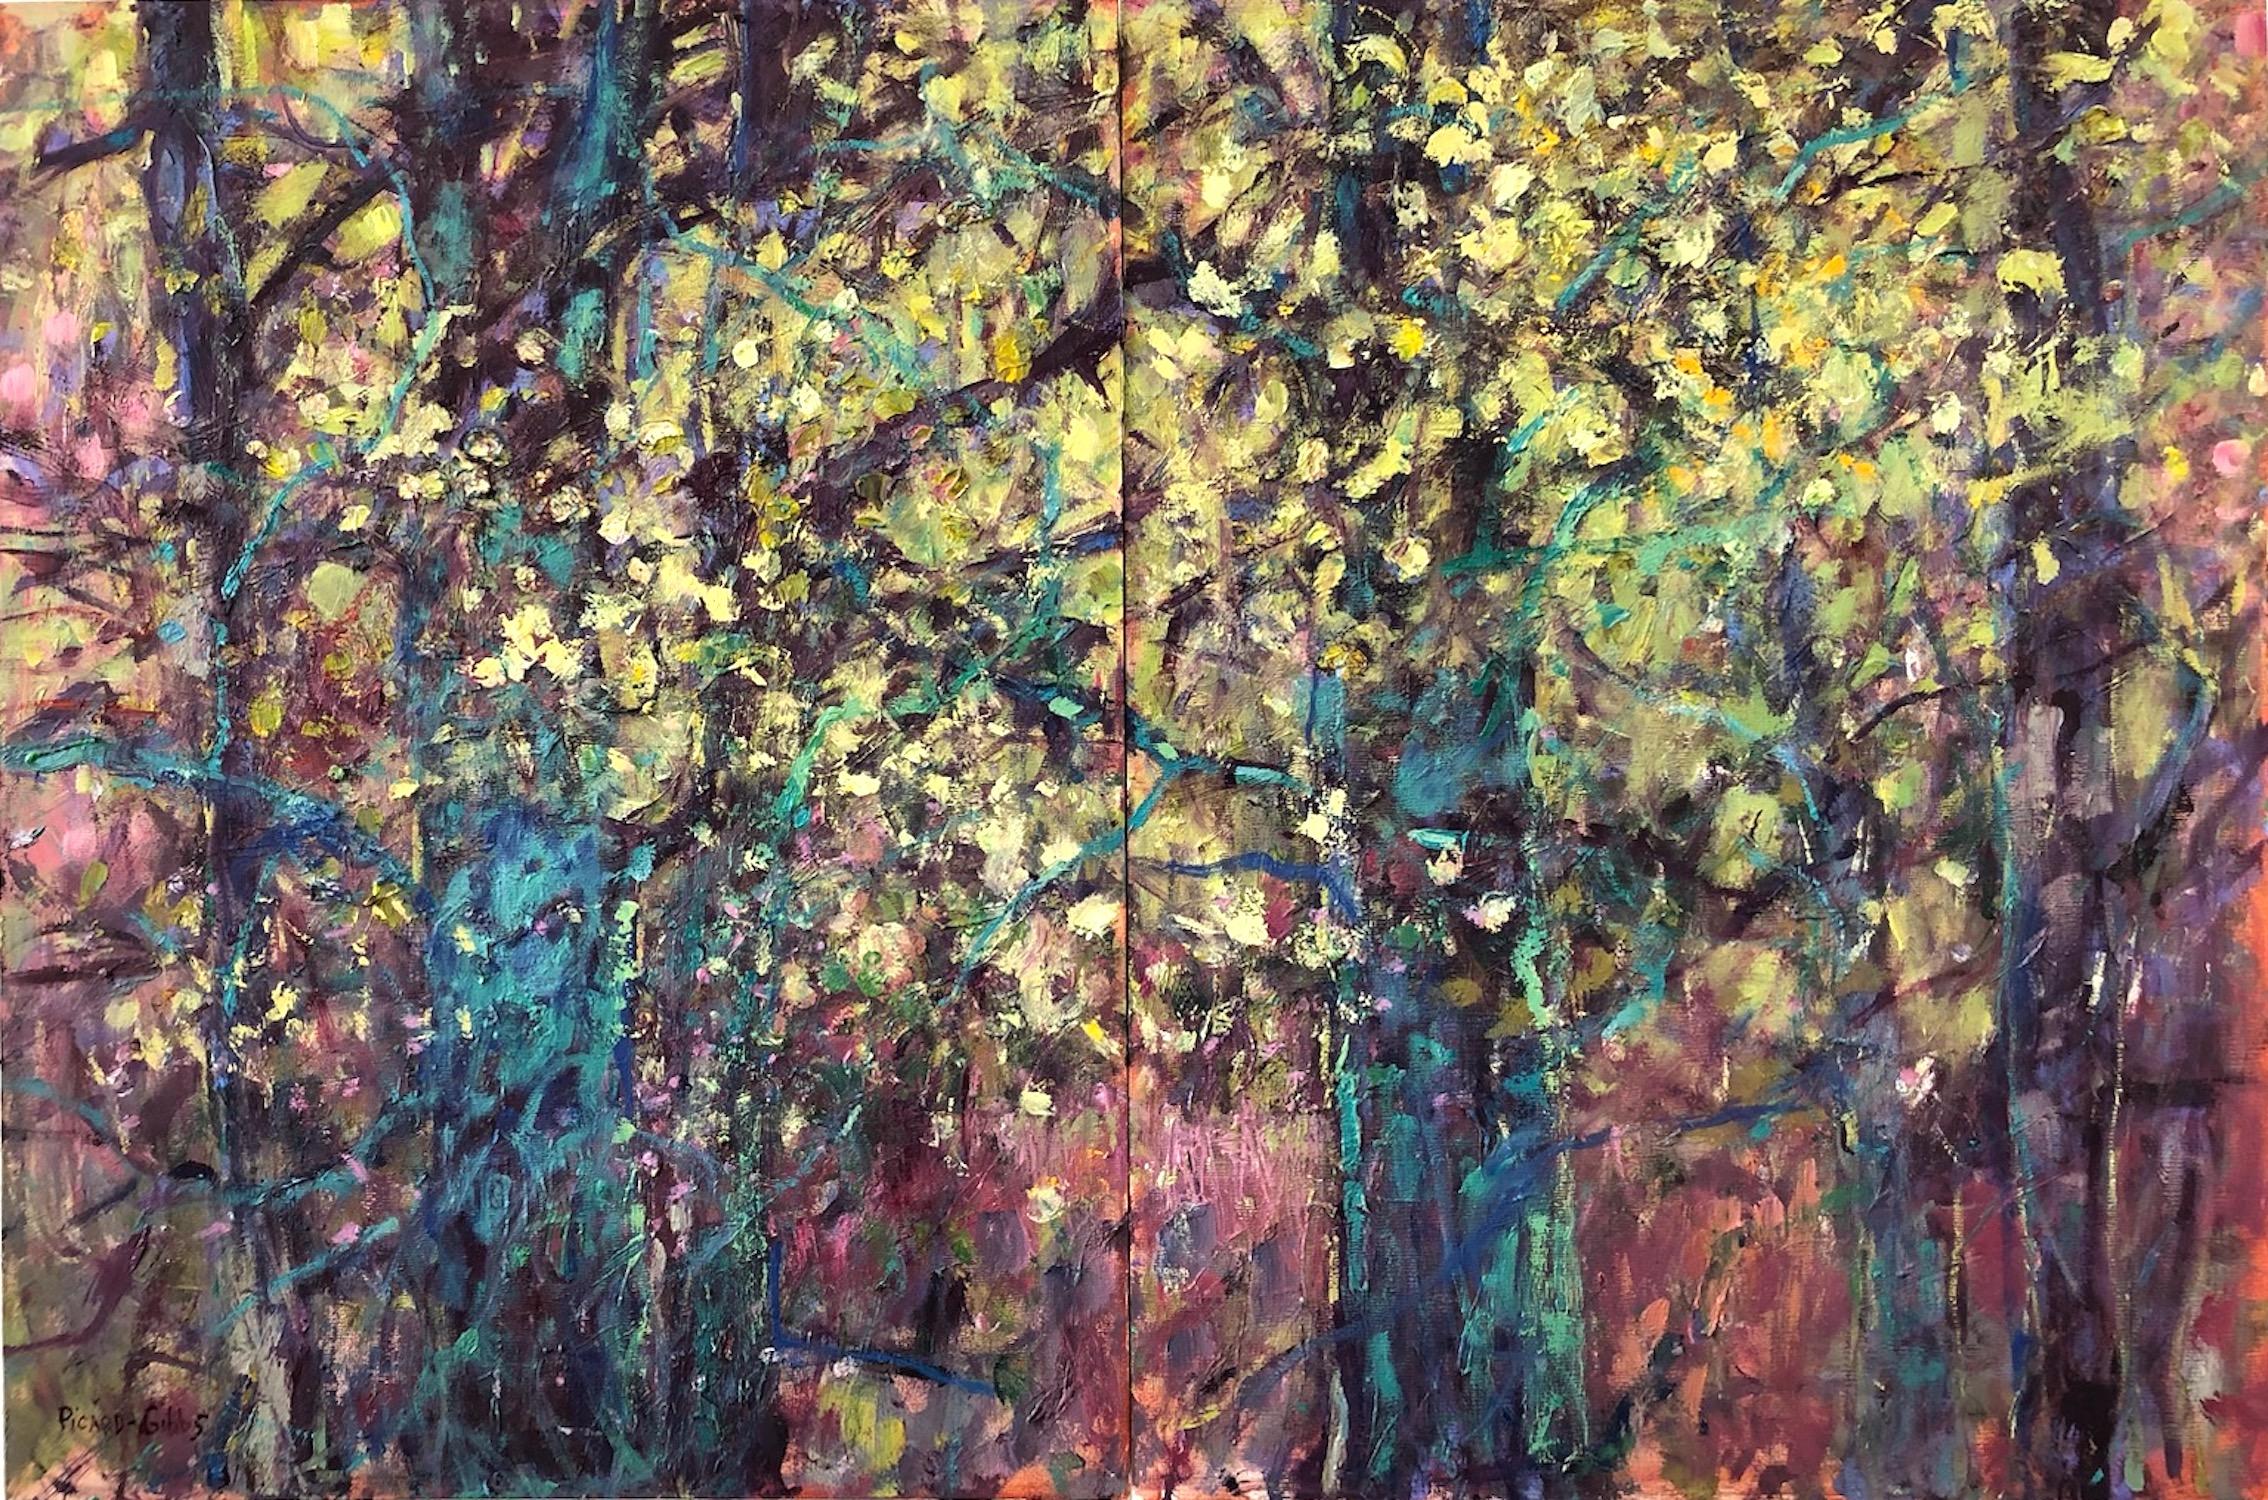 "Diptyque de branches illuminées", contemporain, jaune, vert, rose, peinture à l'huile. - Painting de Catherine Picard-Gibbs